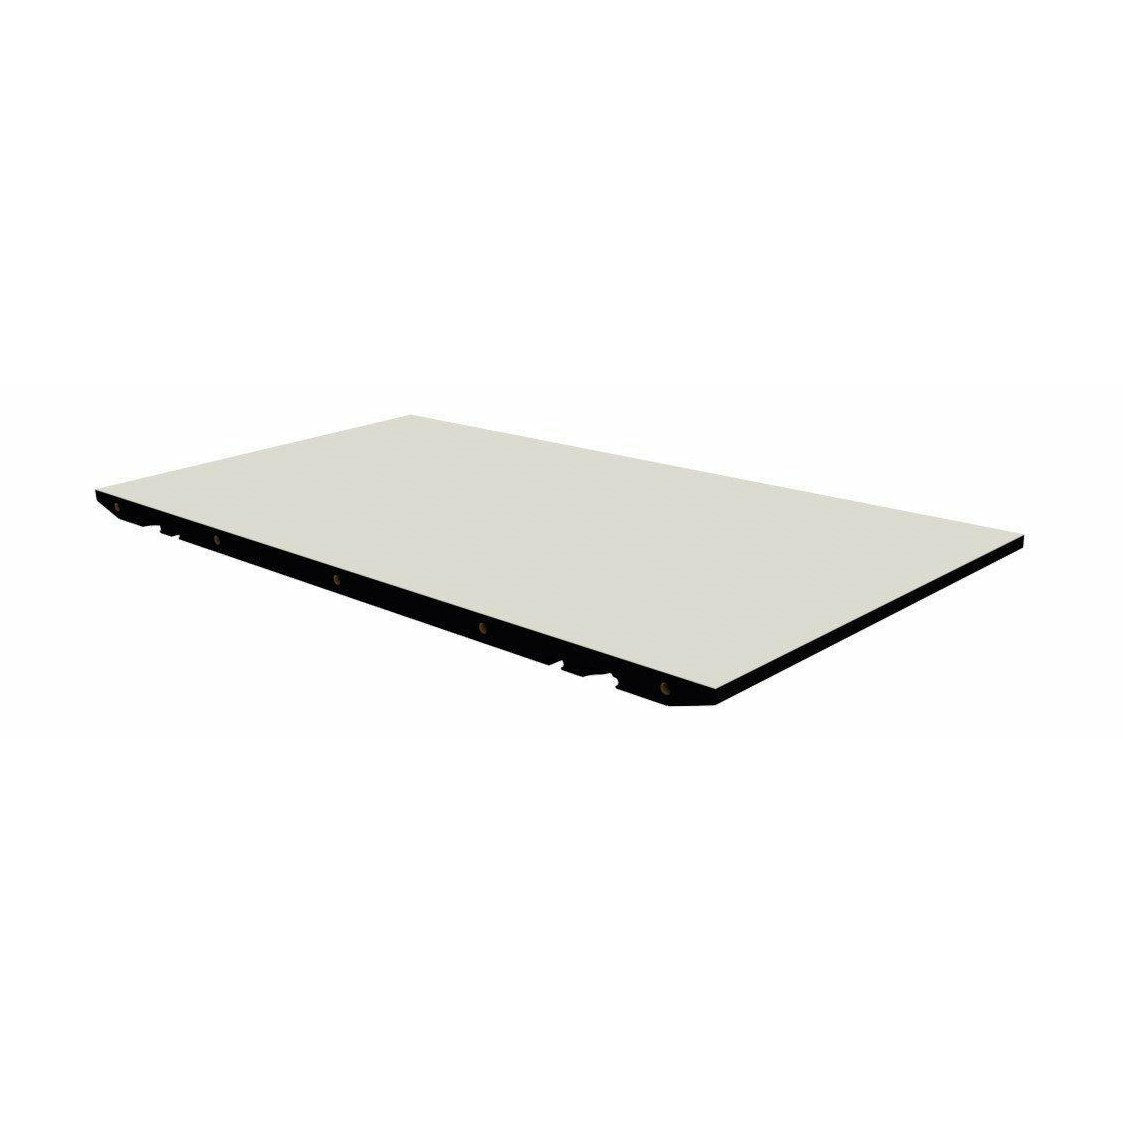 Andersen Furniture T1 Ytterligare platta, vit laminat, 50x88cm